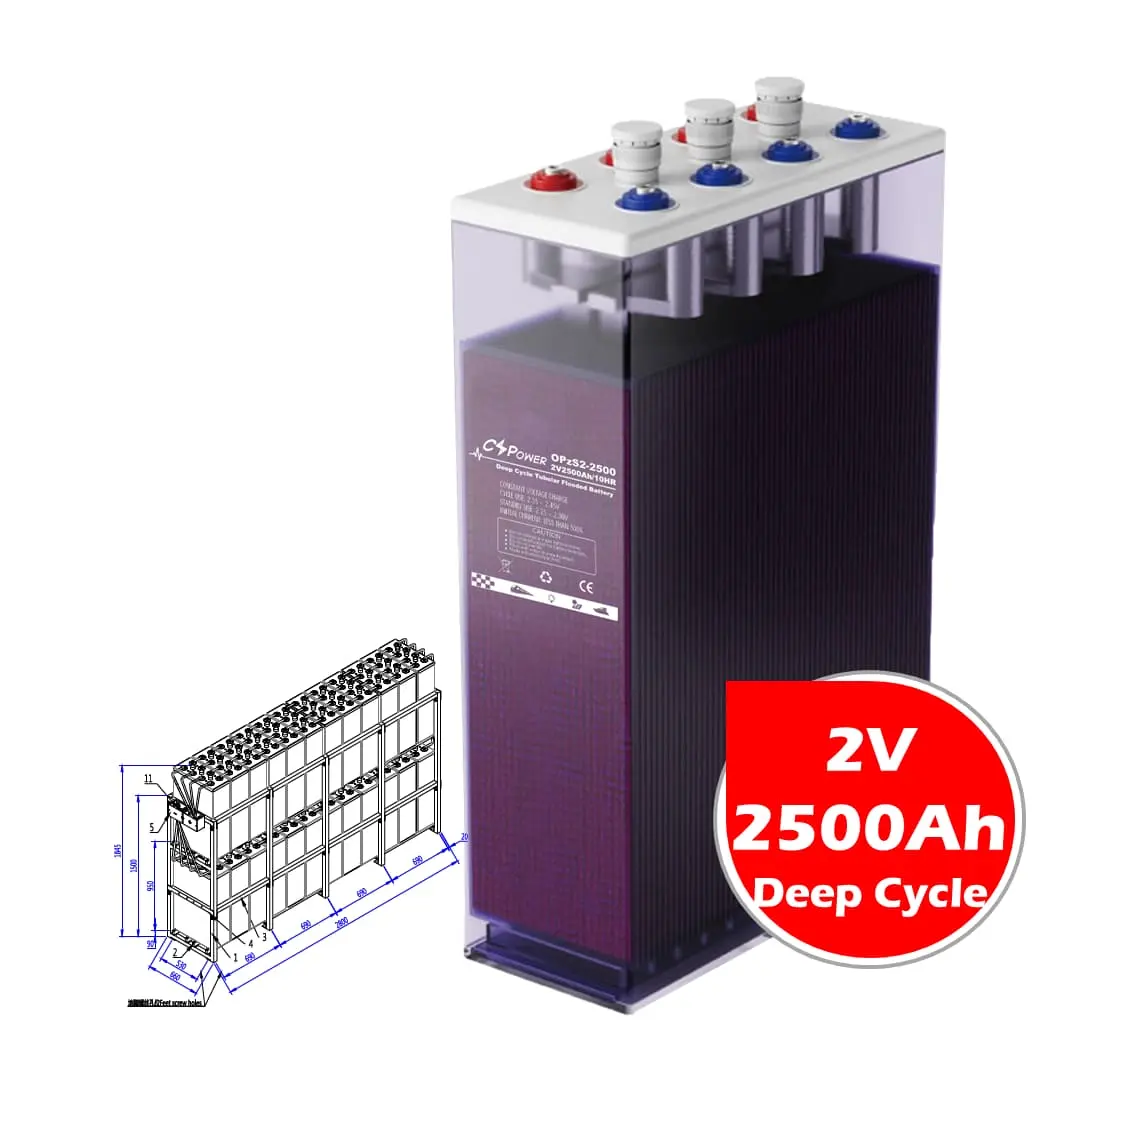 Cspower 2V 2500ah nhiệt độ cao hình ống opzs Pin cho năng lượng mặt trời biến tần Trung Quốc nhà máy OPzV2-2500 24opzs2500 VS leoch rit